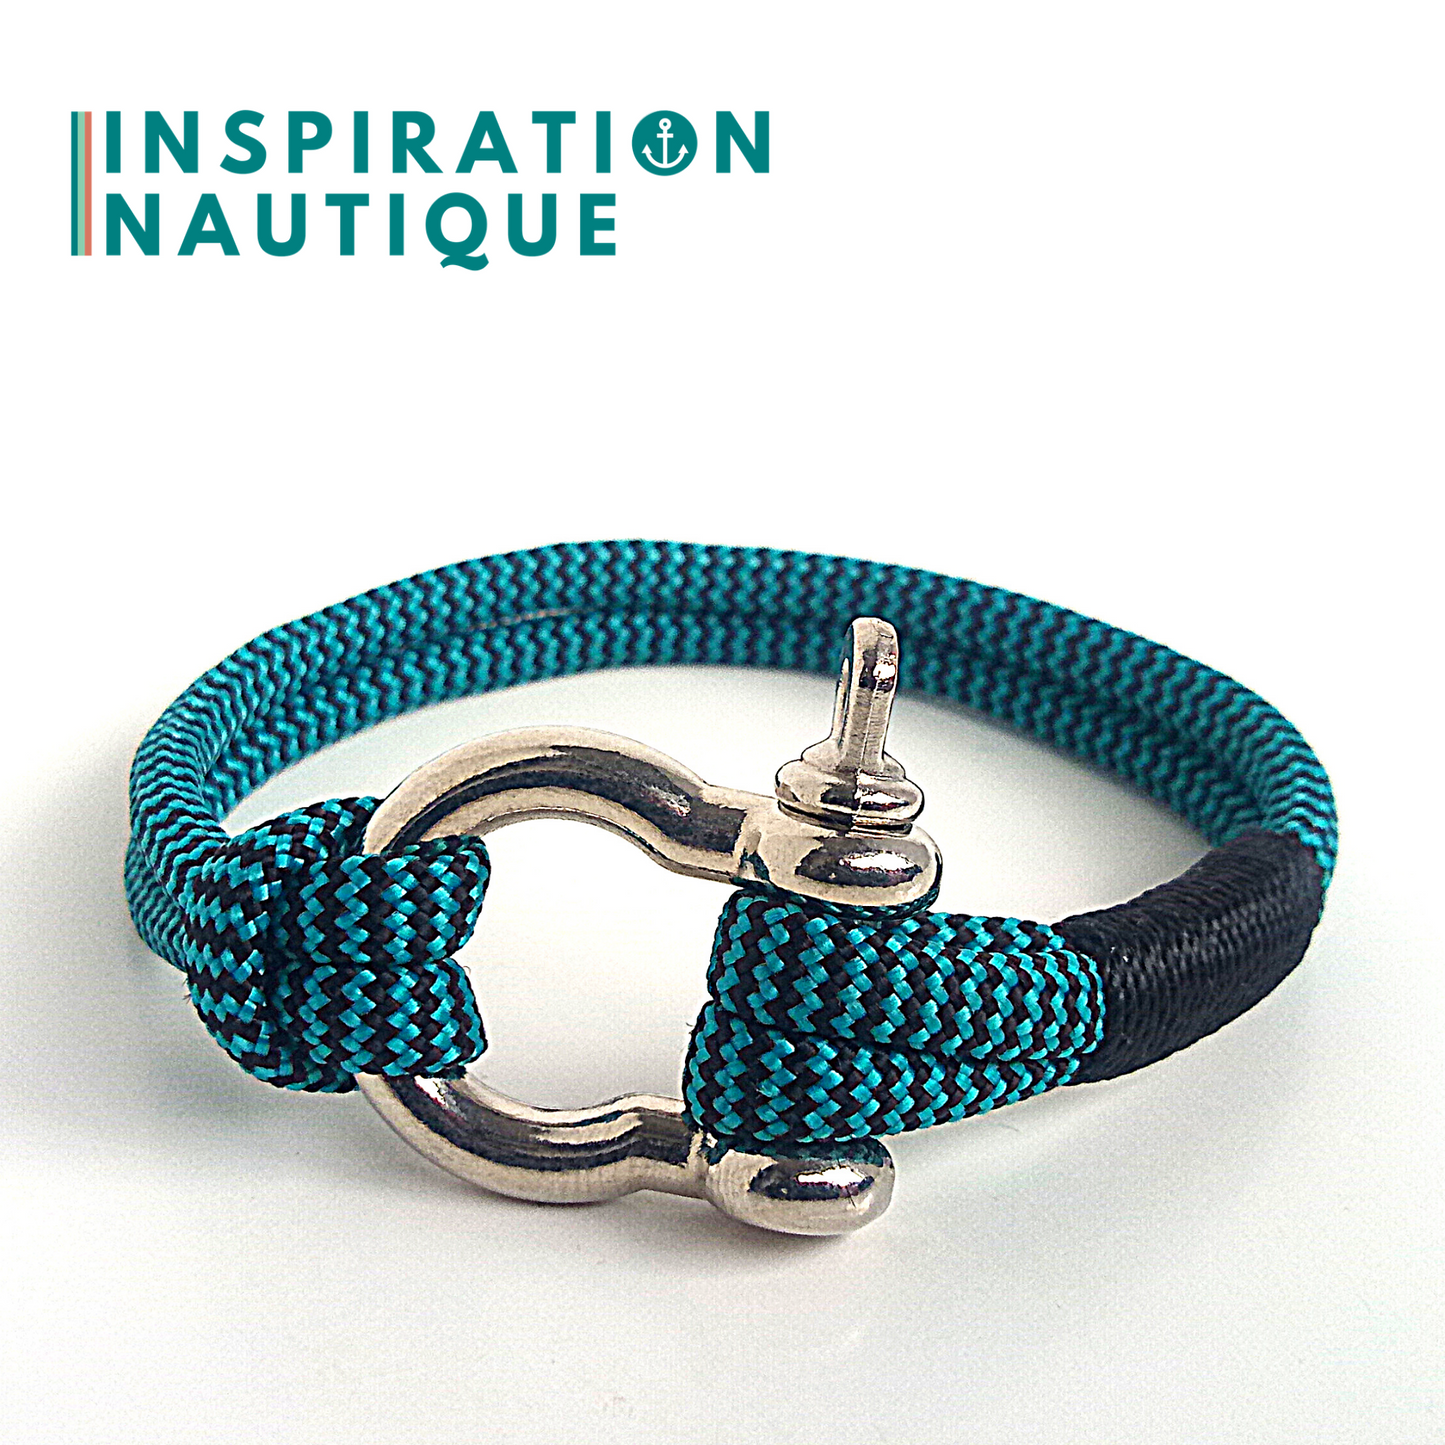 Bracelet marin avec manille en paracorde 550 et acier inoxydable, Turquoise et noir, zigzags, Surliure noire, Medium-Large